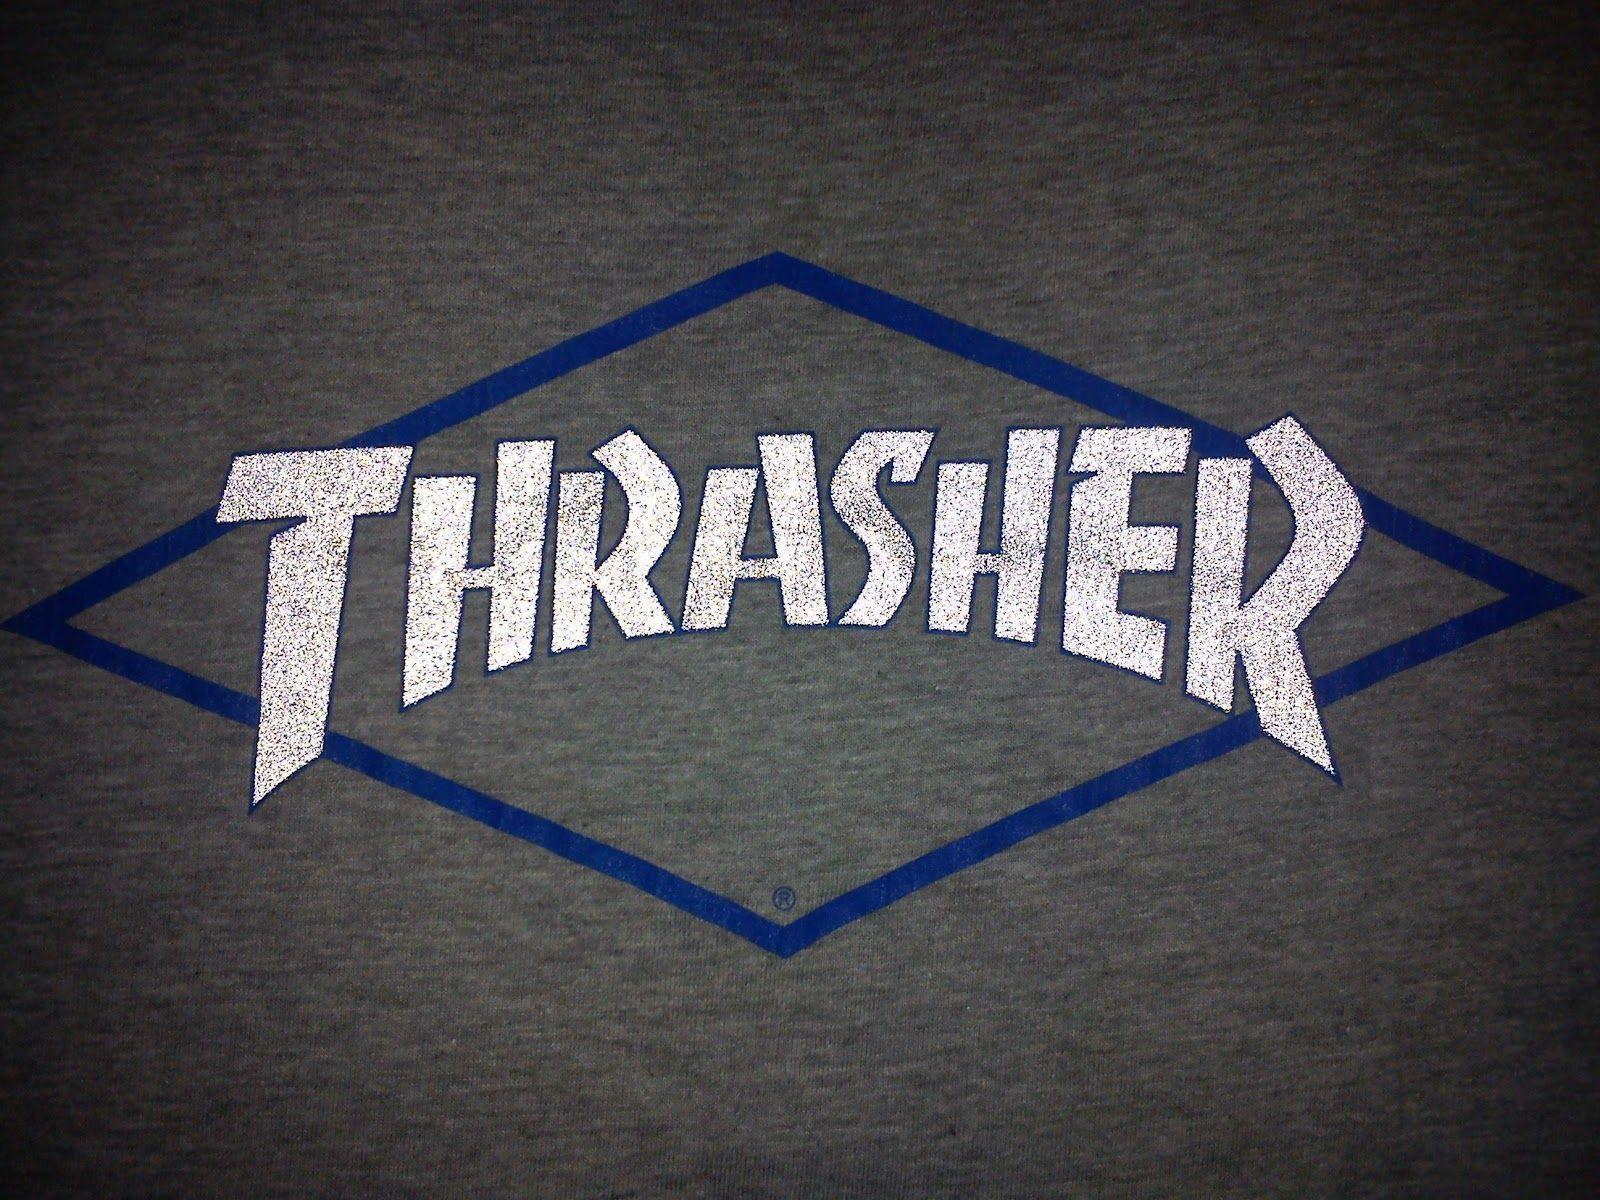 Thrasher Magazine Logo